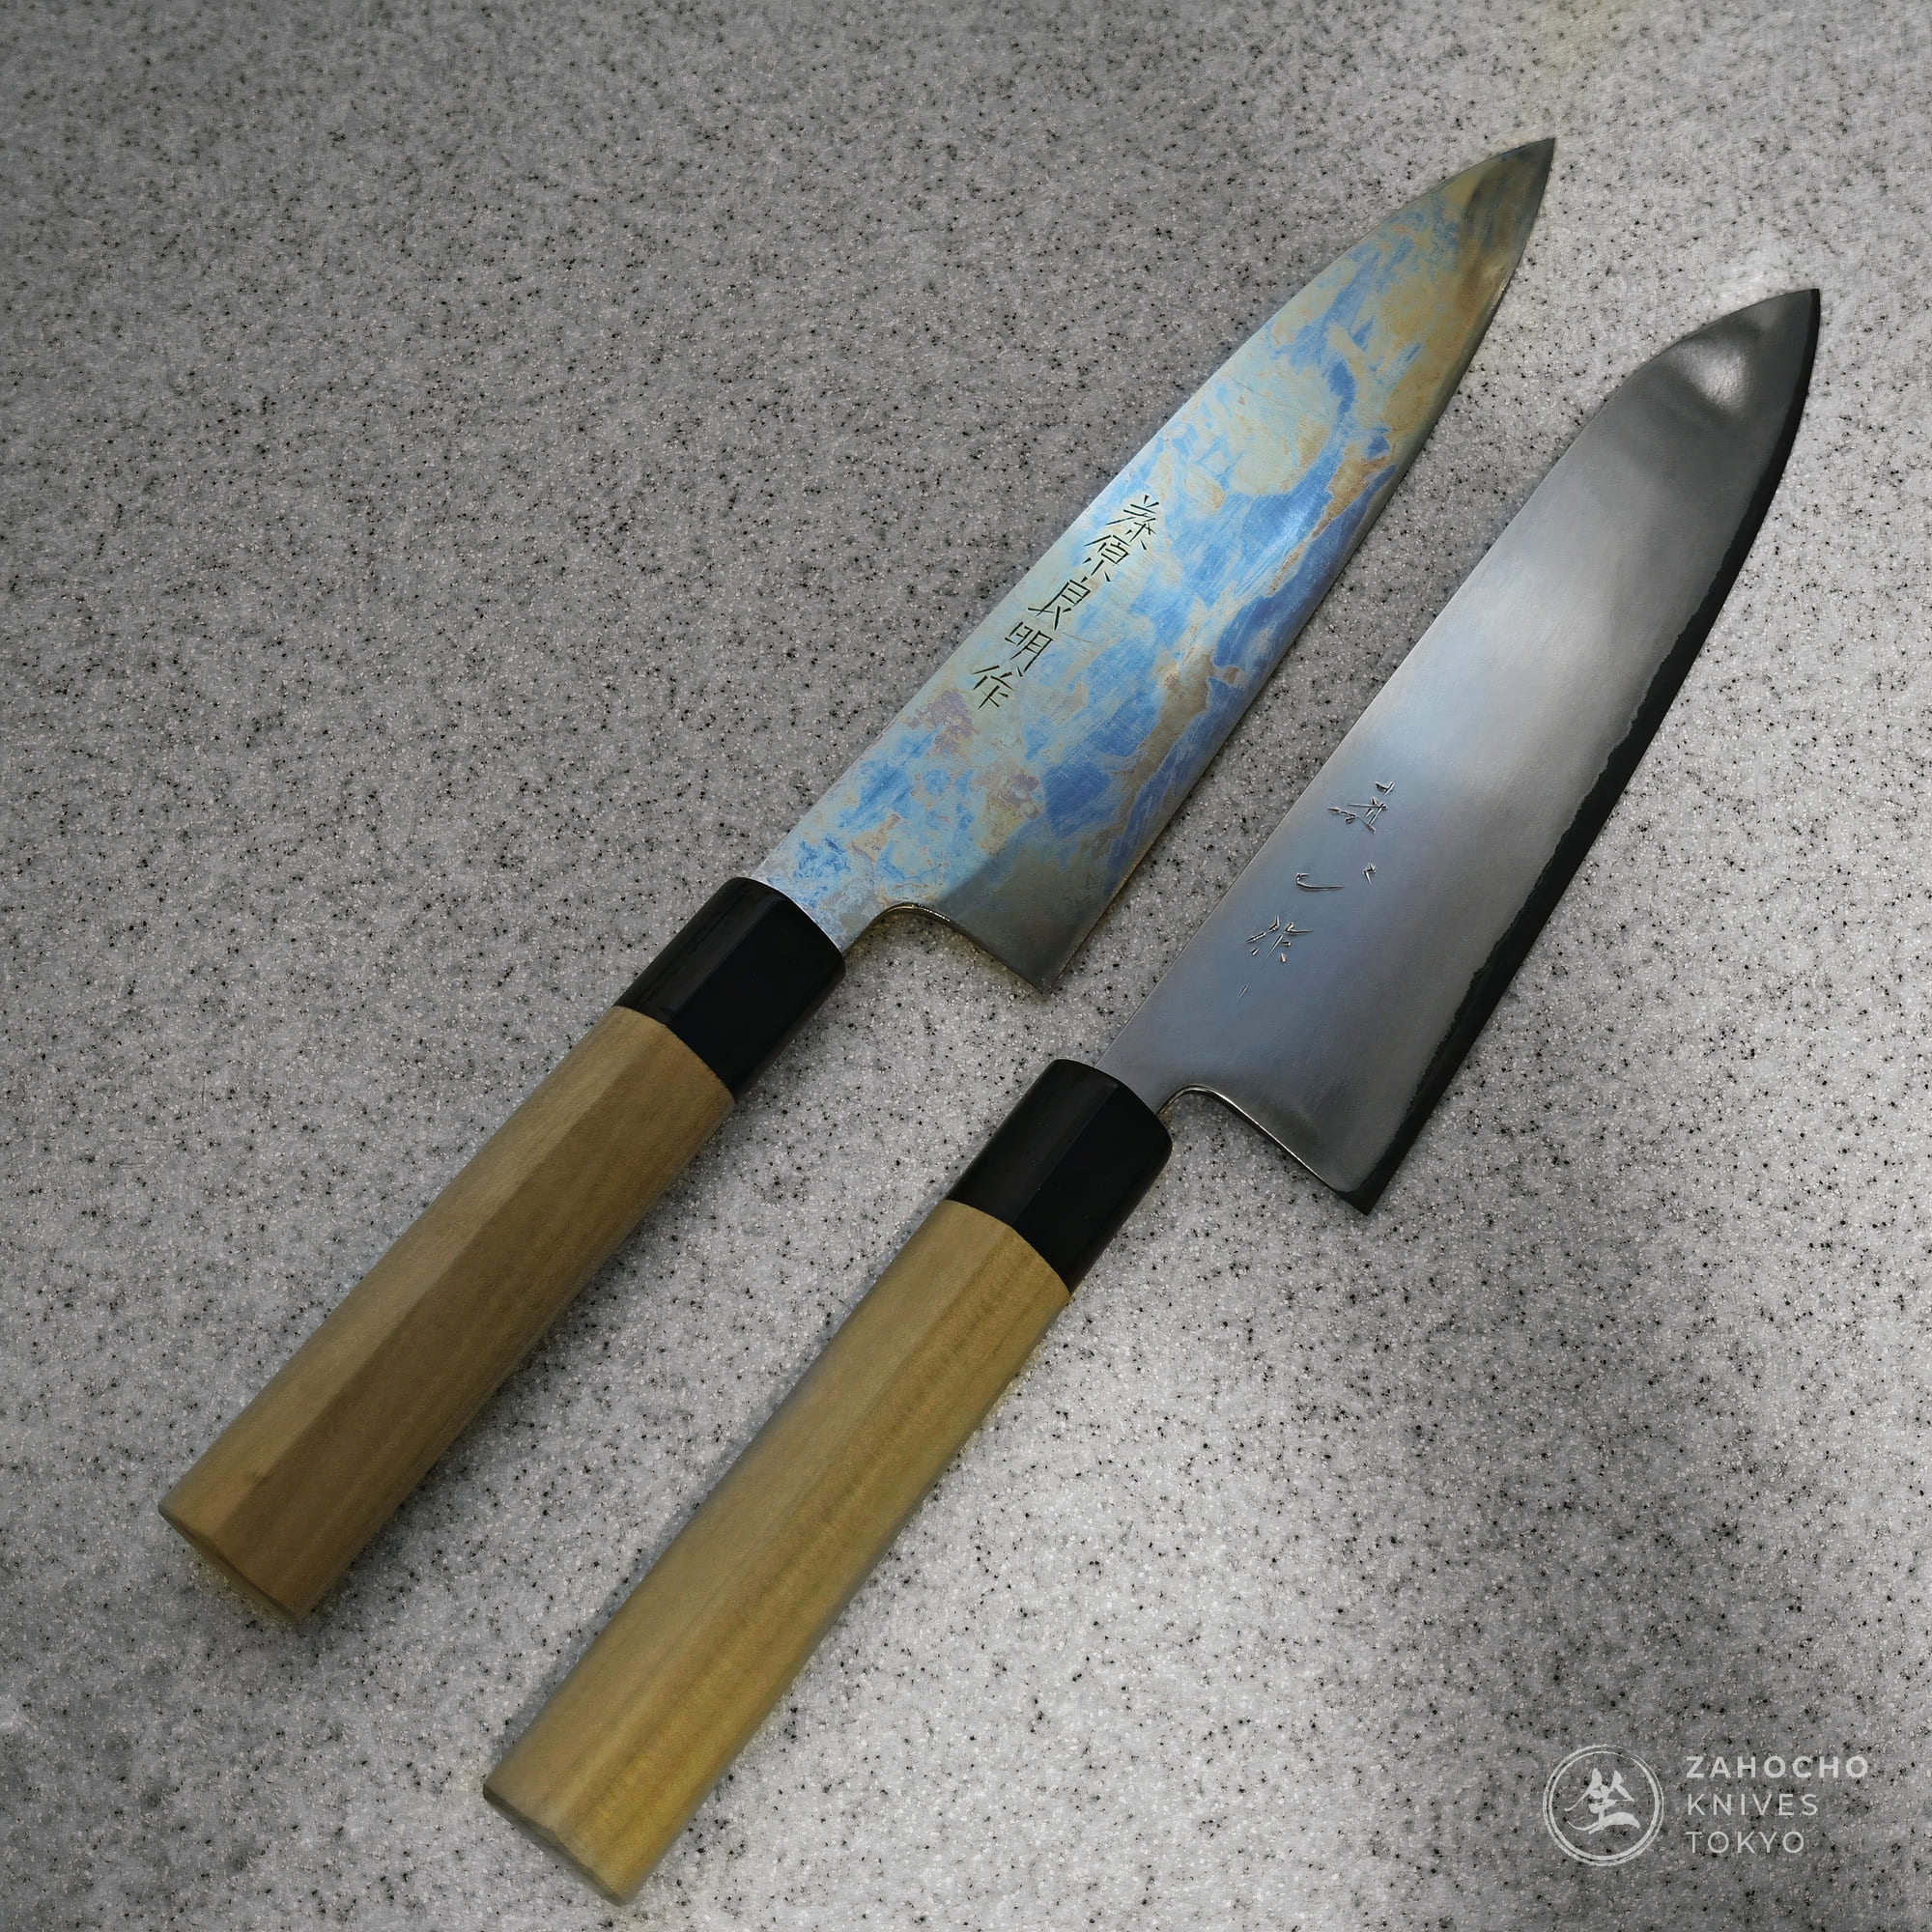 https://cdn.shopify.com/s/files/1/0248/5075/9729/files/zahocho-japanese-knives-kiyoshi-kato-watanabe-pro-patina.jpg?v=1688626252